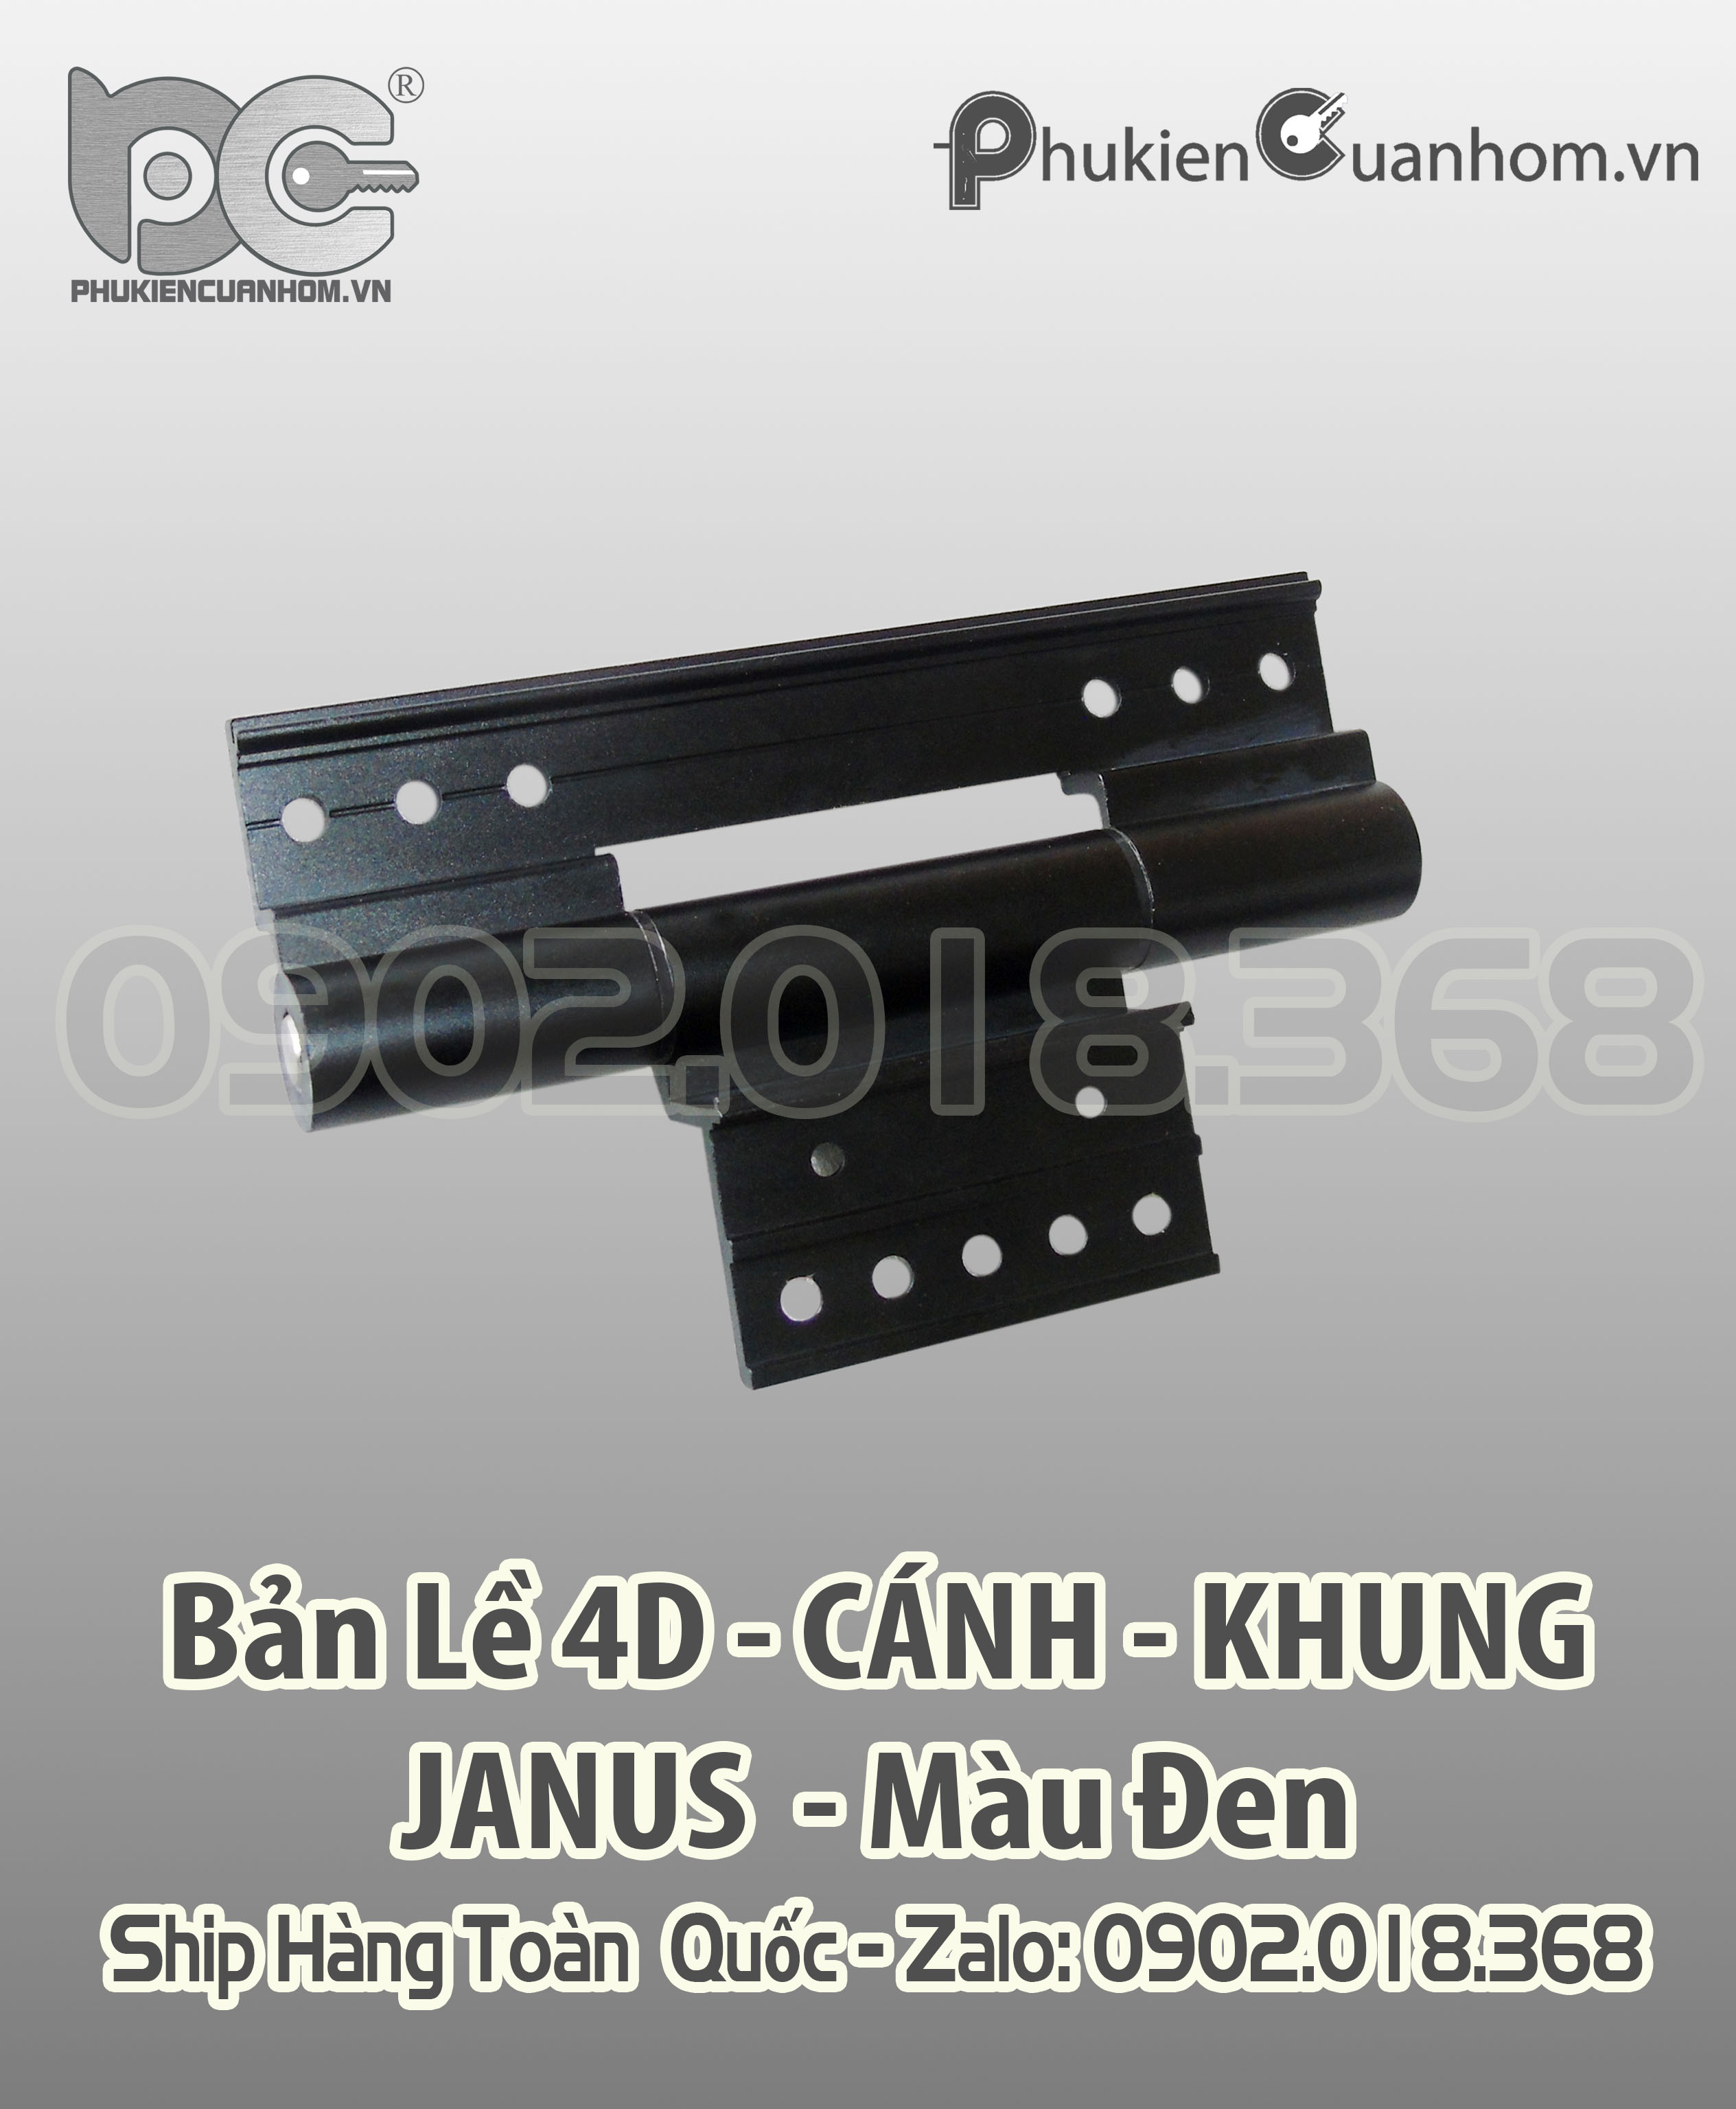 Bản lề 4D cánh khung cao cấp Xingfa 55 hiệu Janus màu đen